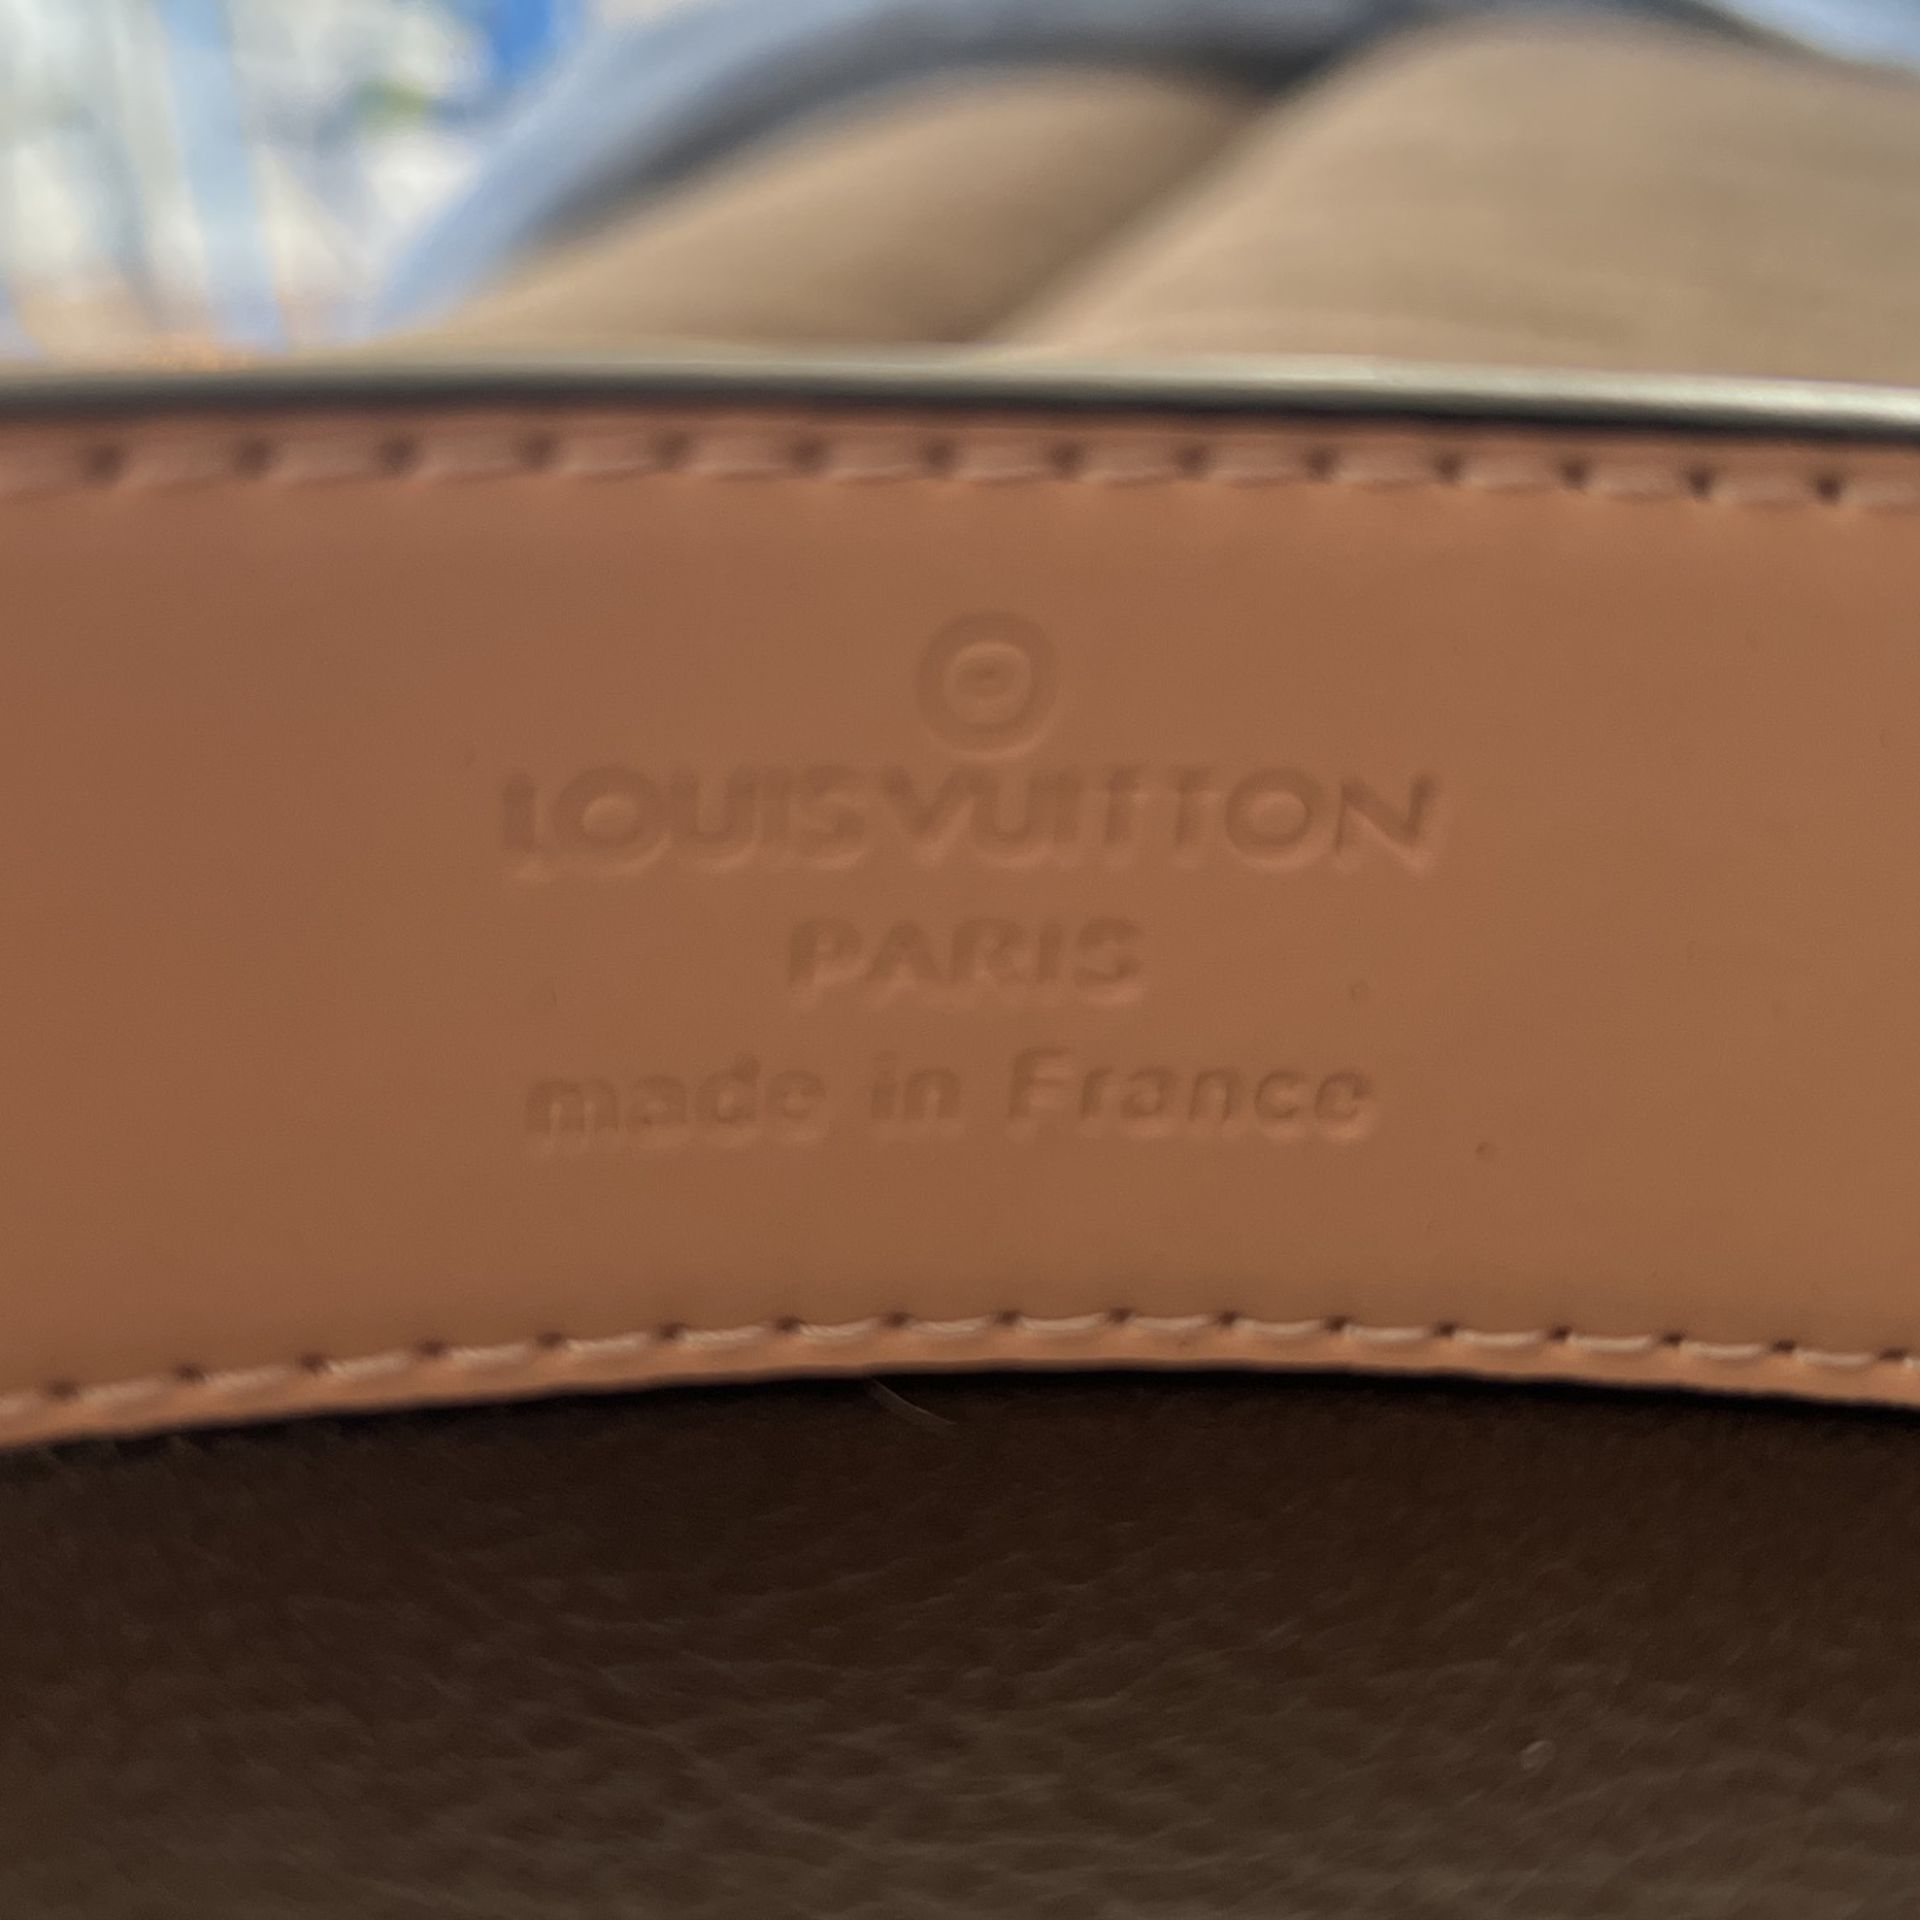 2 Louis Vuitton Men Belts for Sale in Friendswood, TX - OfferUp